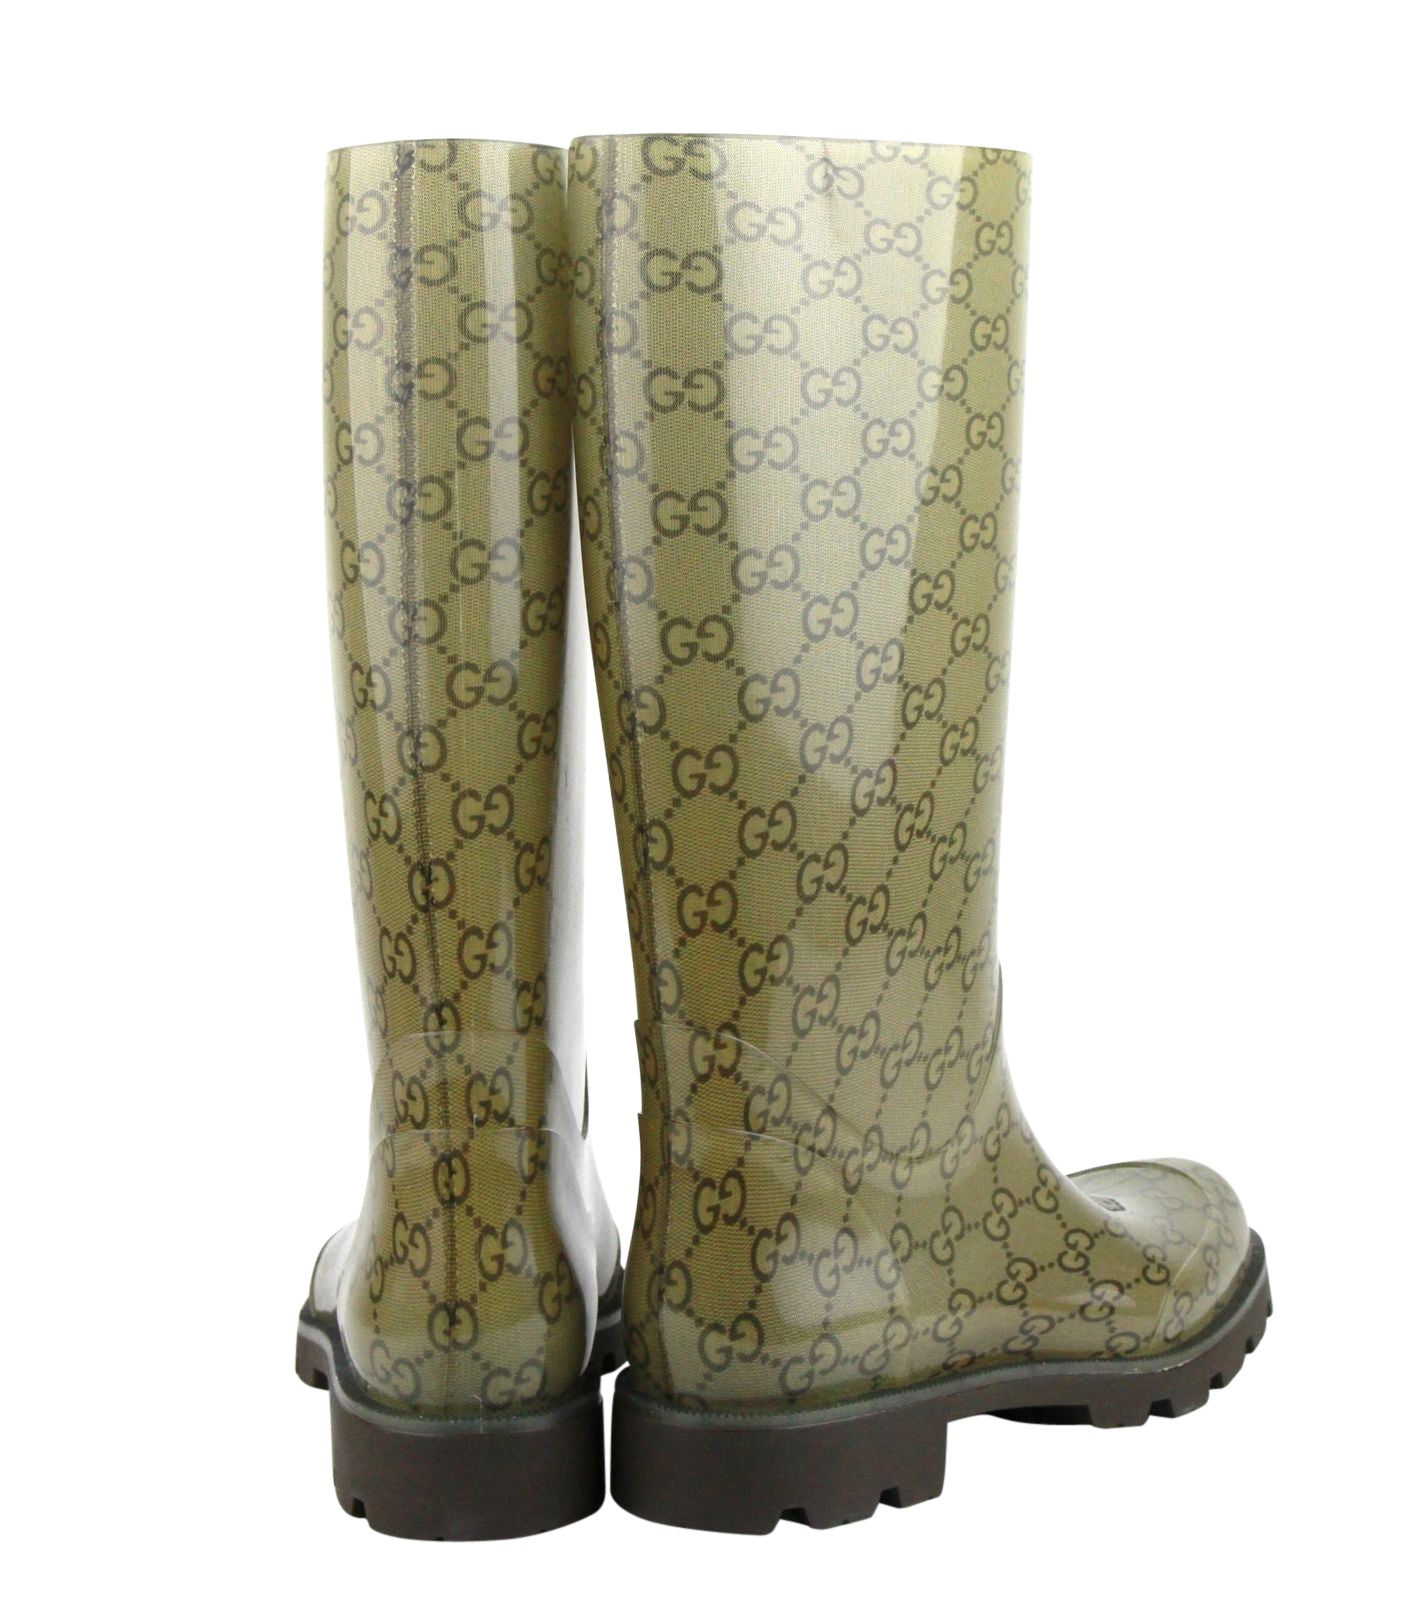 Gucci Rain Boots Guccissima Pattern Rubber for Women